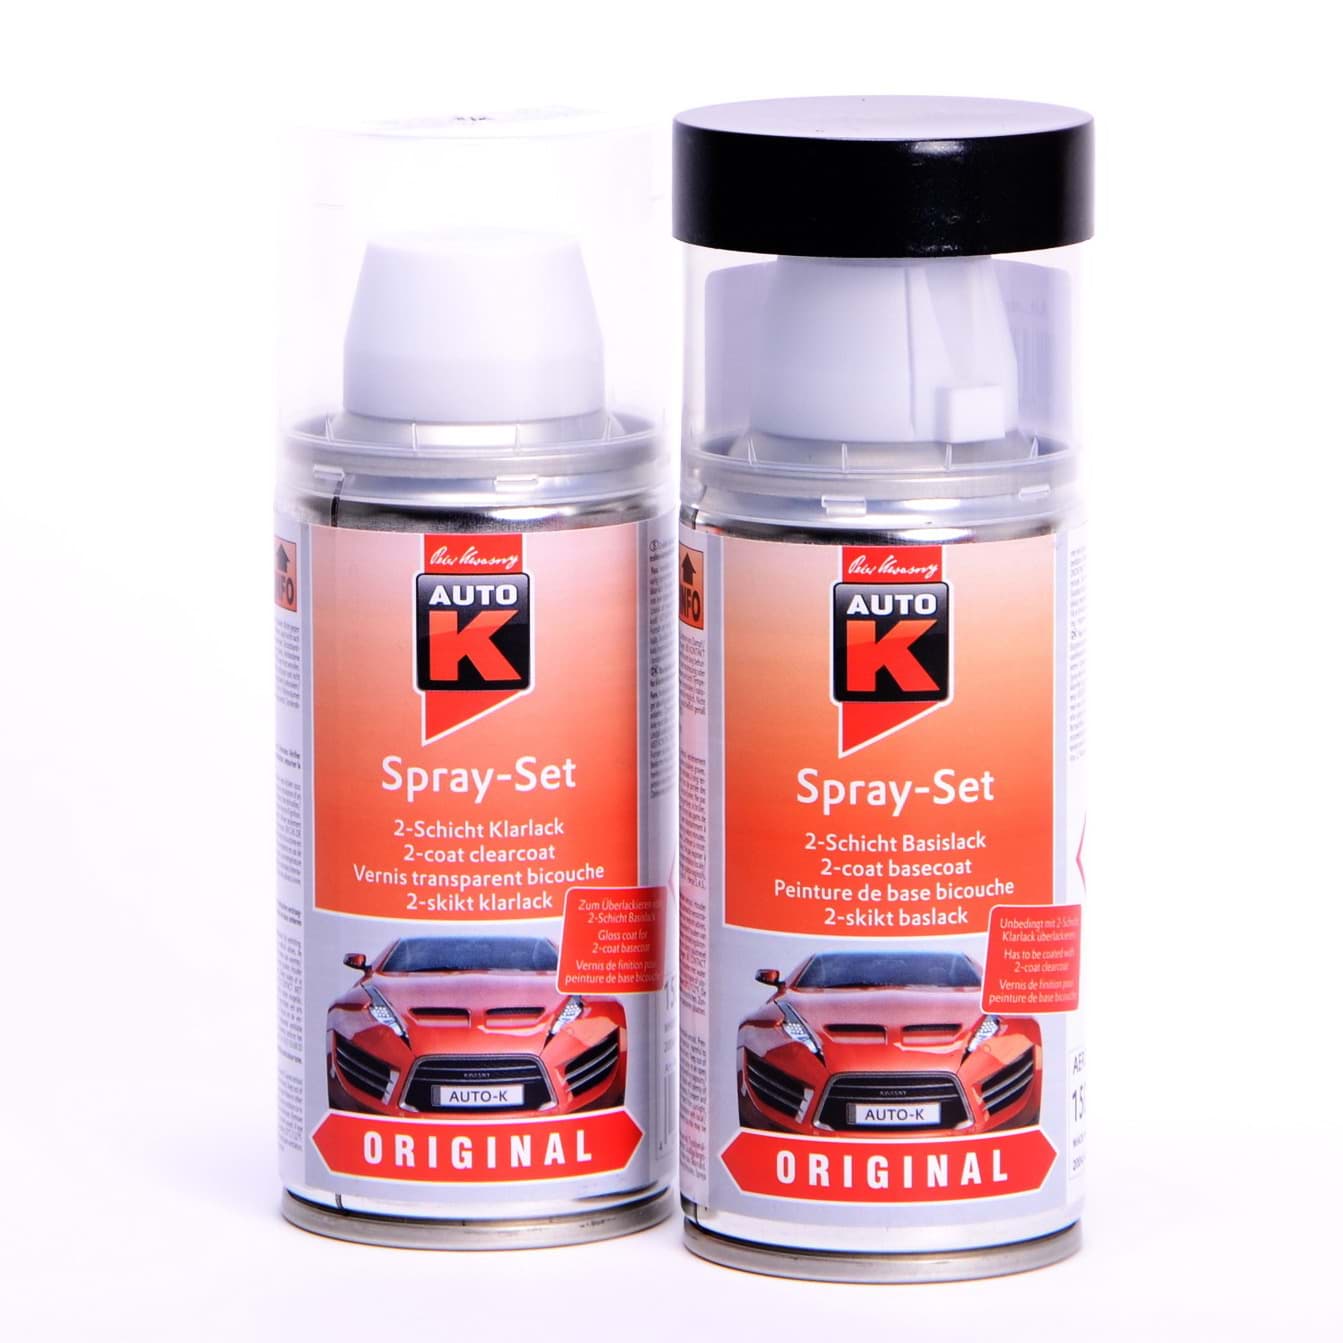 Afbeelding van Auto-K Spray-Set Autolack für Opel 361 mintgrün 21395